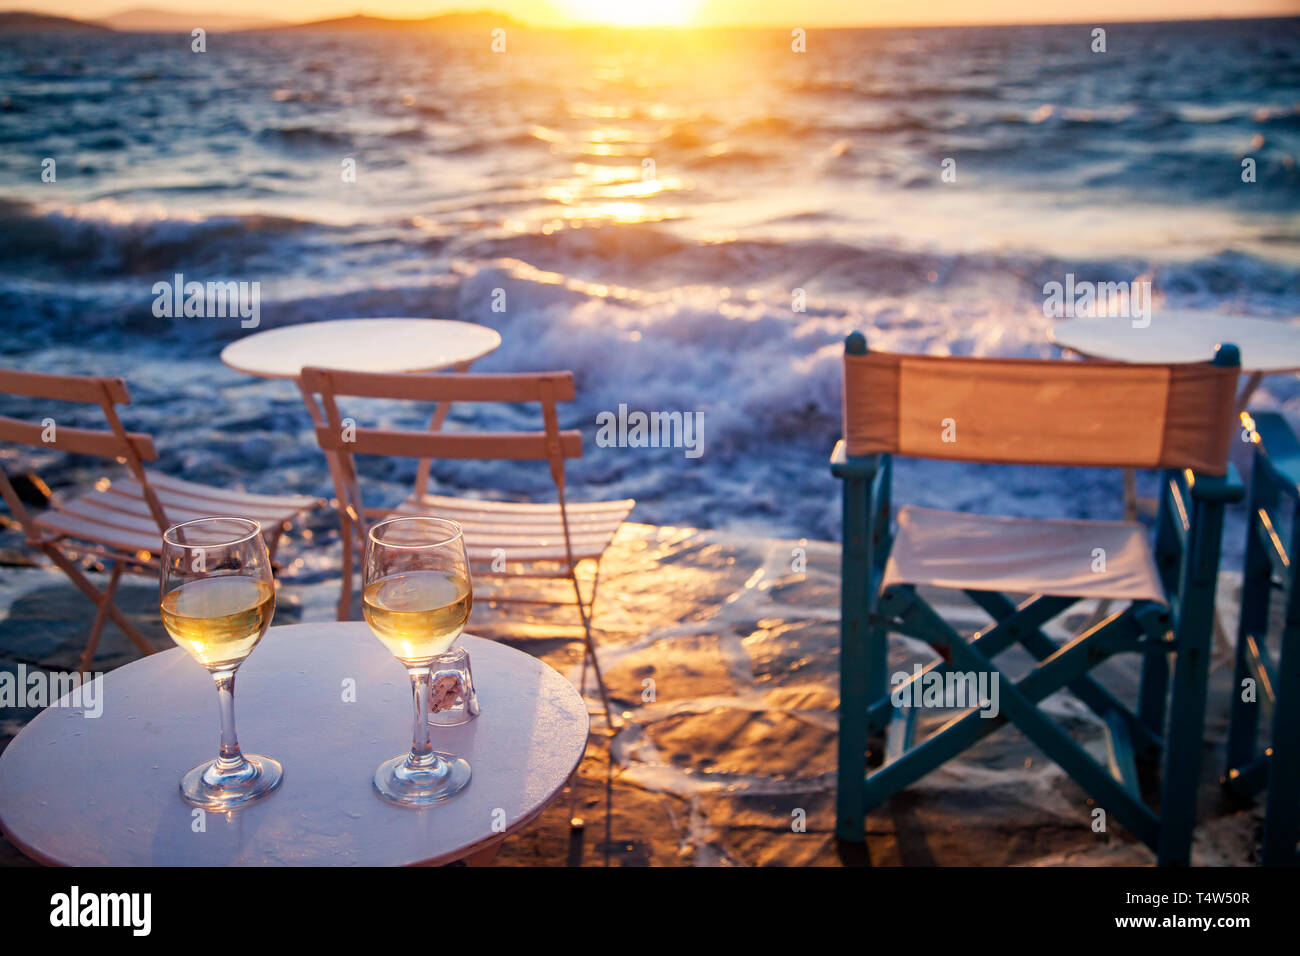 Serata romantica sulla spiaggia con due bicchieri di vino Foto Stock